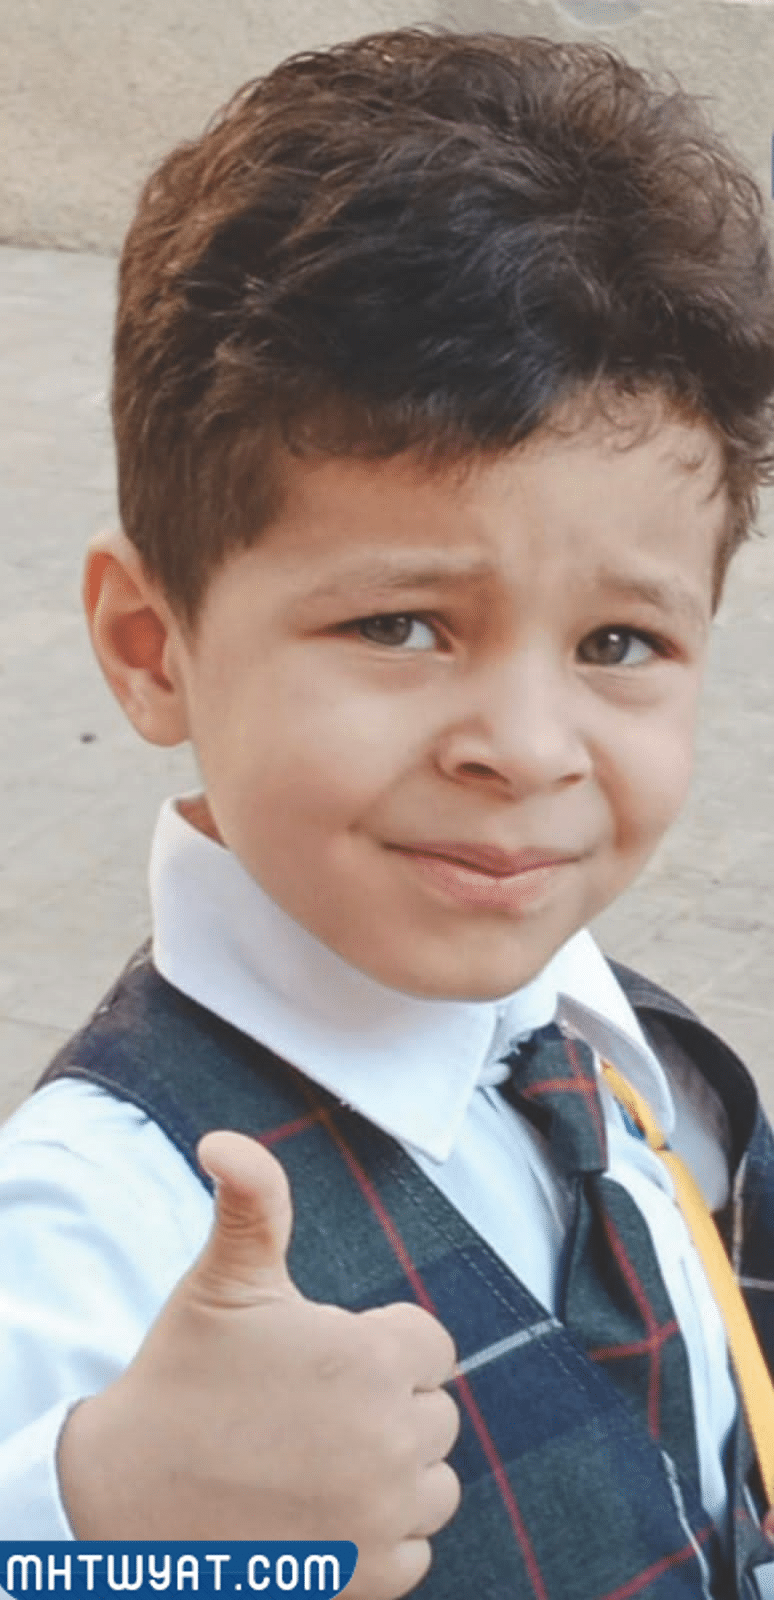 وفاة طفل اختناقًا بعد نسيانه داخل حافلة مدرسية بالقطيف